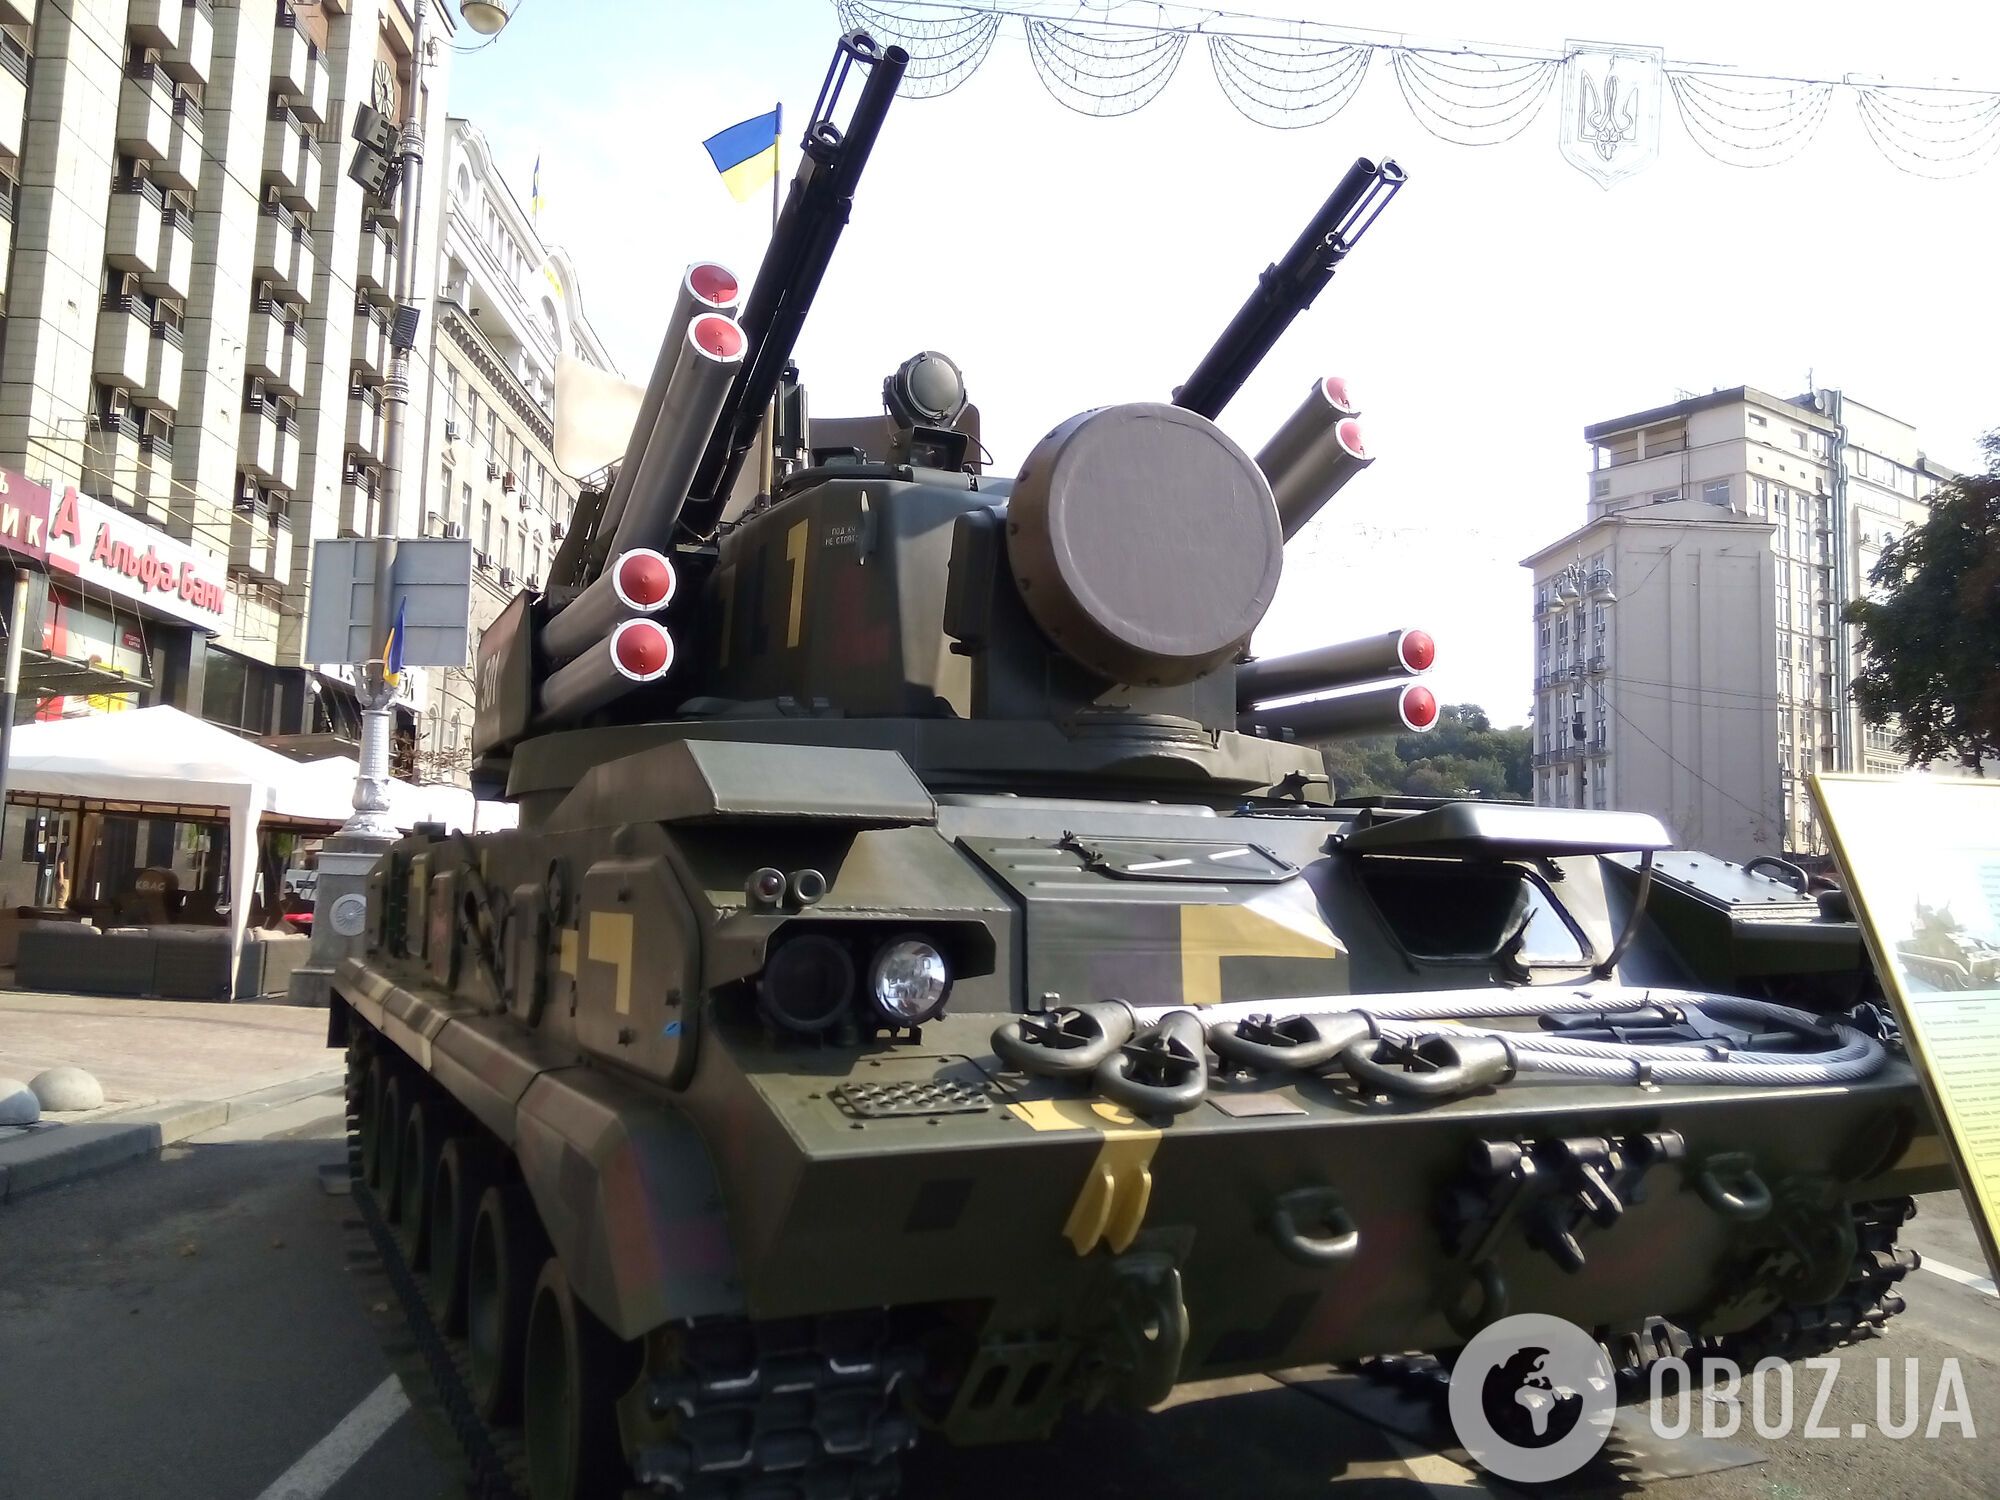 "Мясом сегодня победы не будет": генерал сравнил армии РФ и Украины